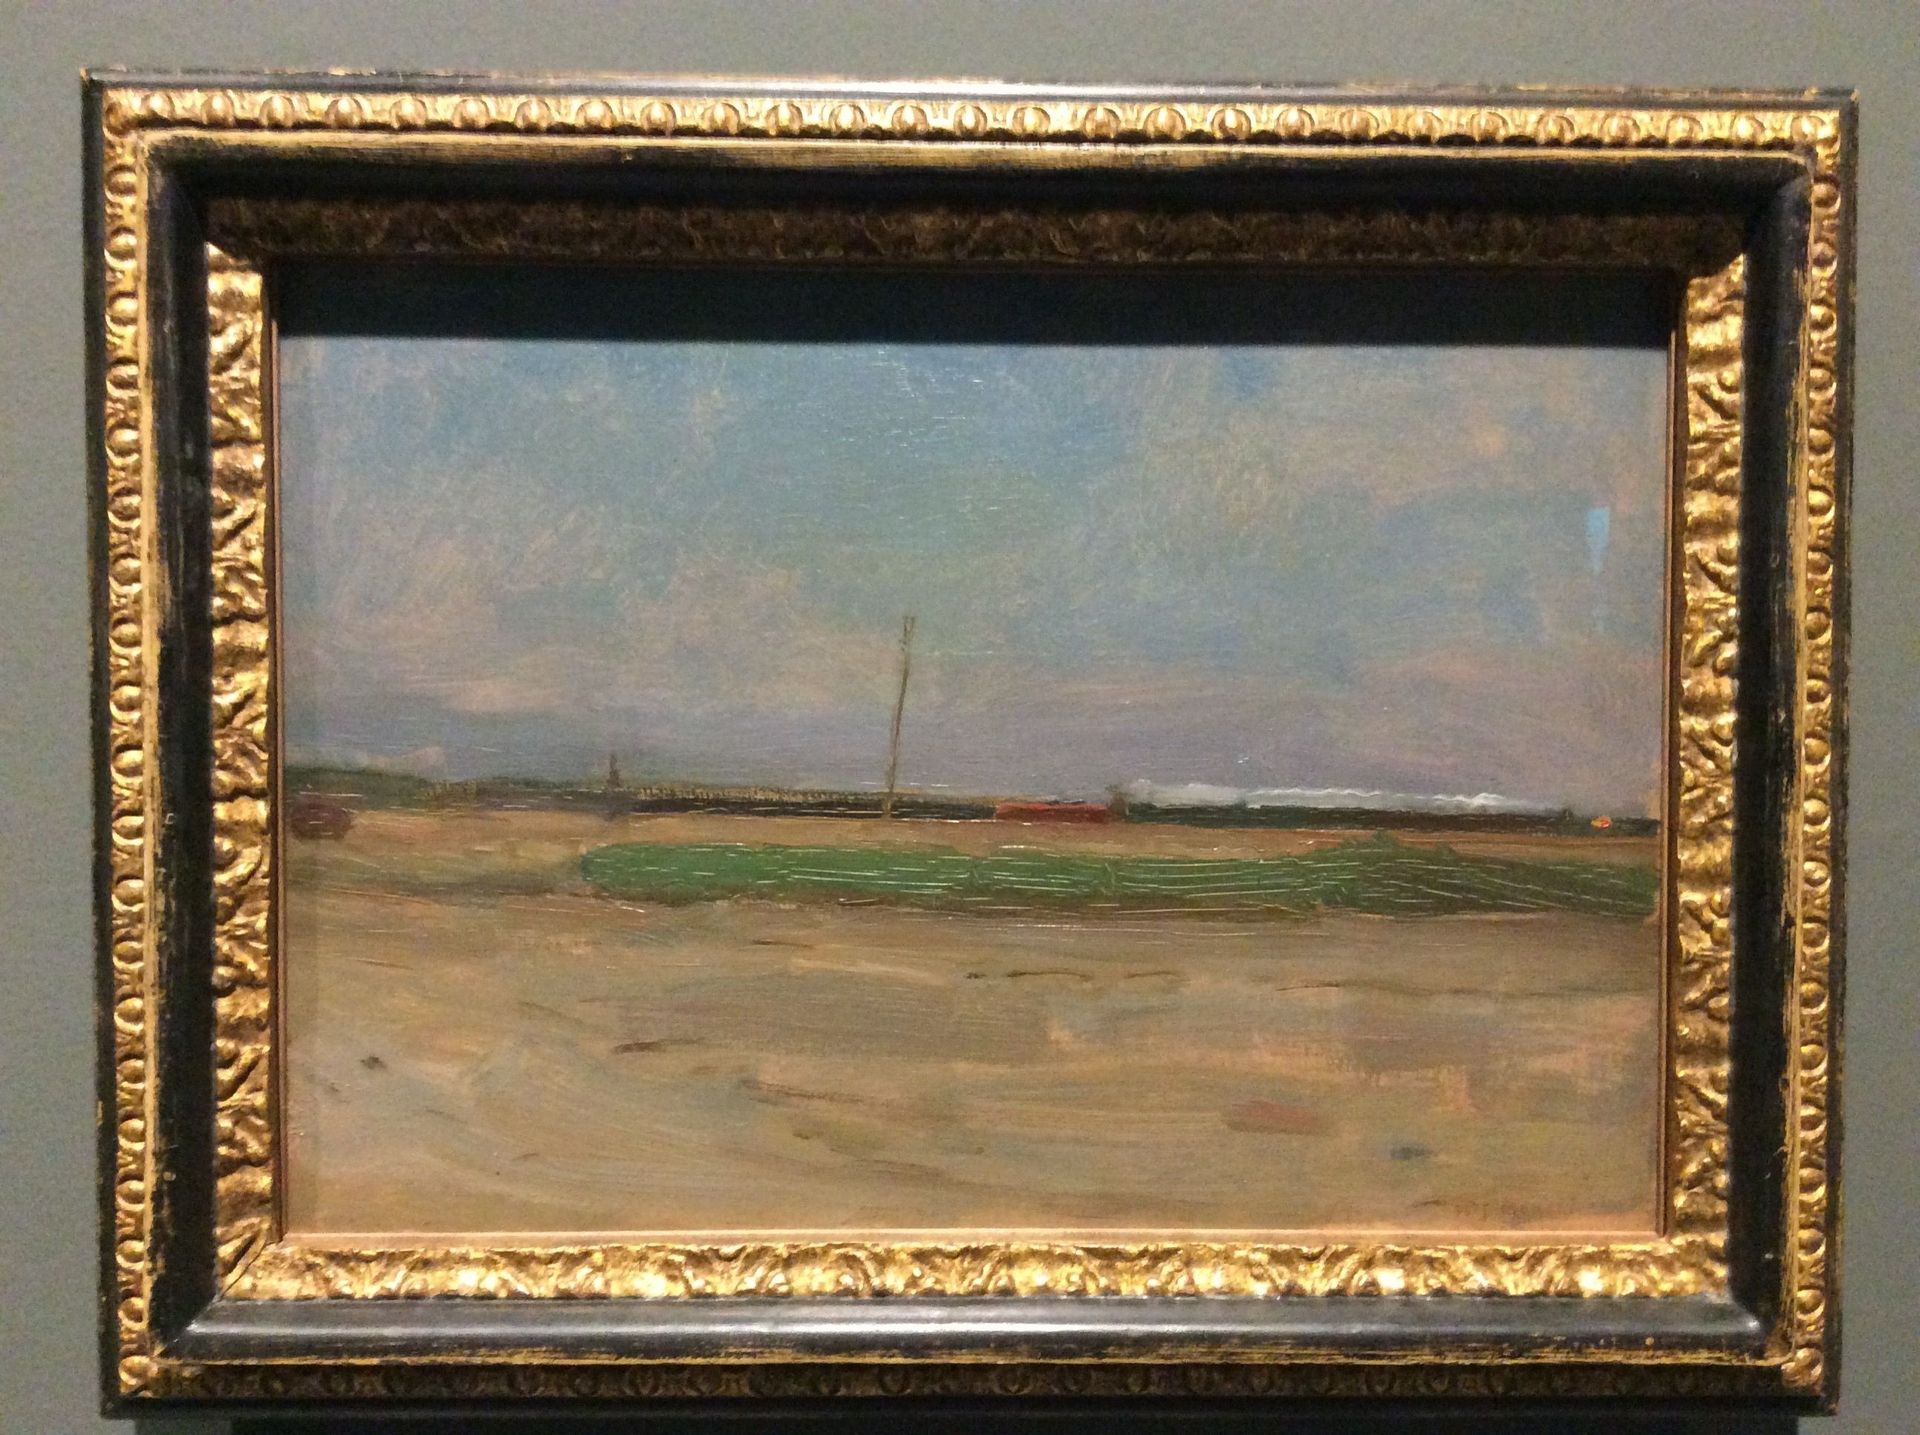 Piet Mondrian, Paysage de polder avec un train à l'horizon